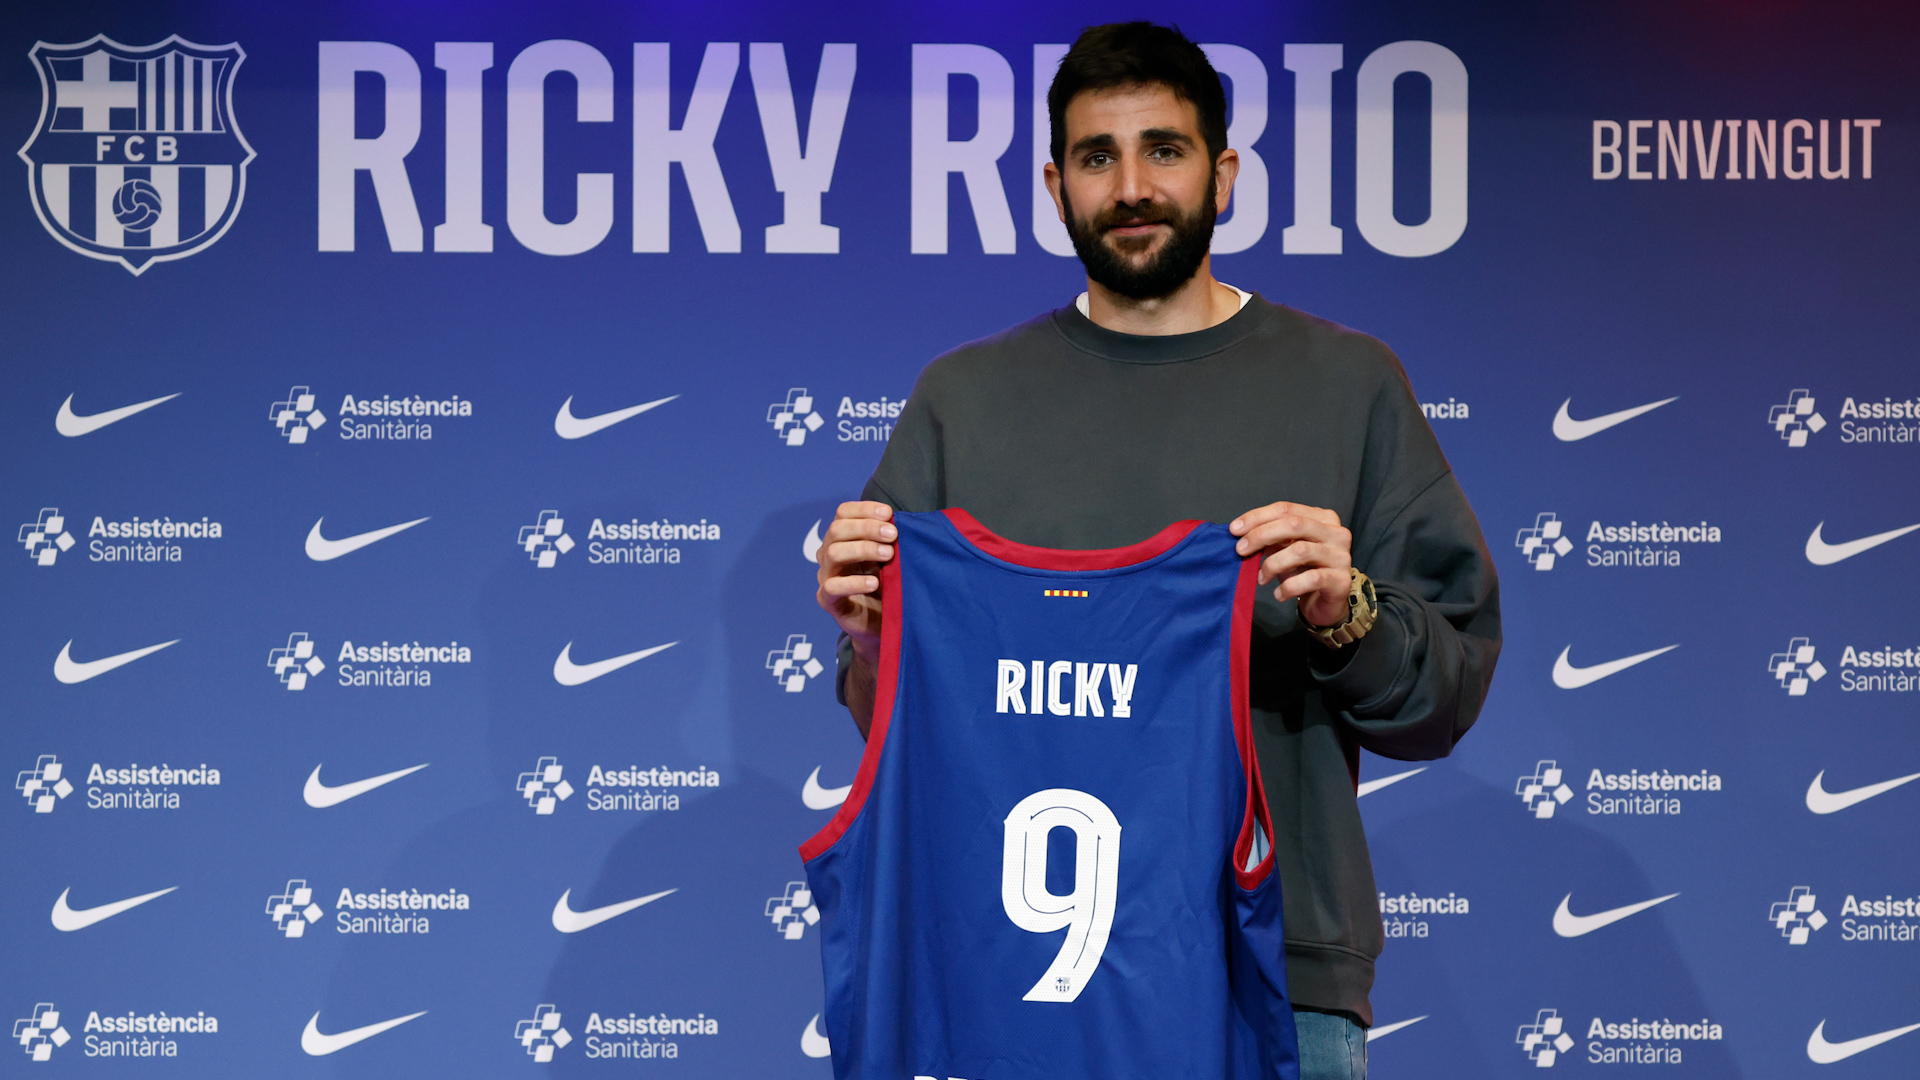 Ricky Rubio en su vuelta al baloncesto y al Barça: "Me sentí un cobarde por no tener fuerzas"